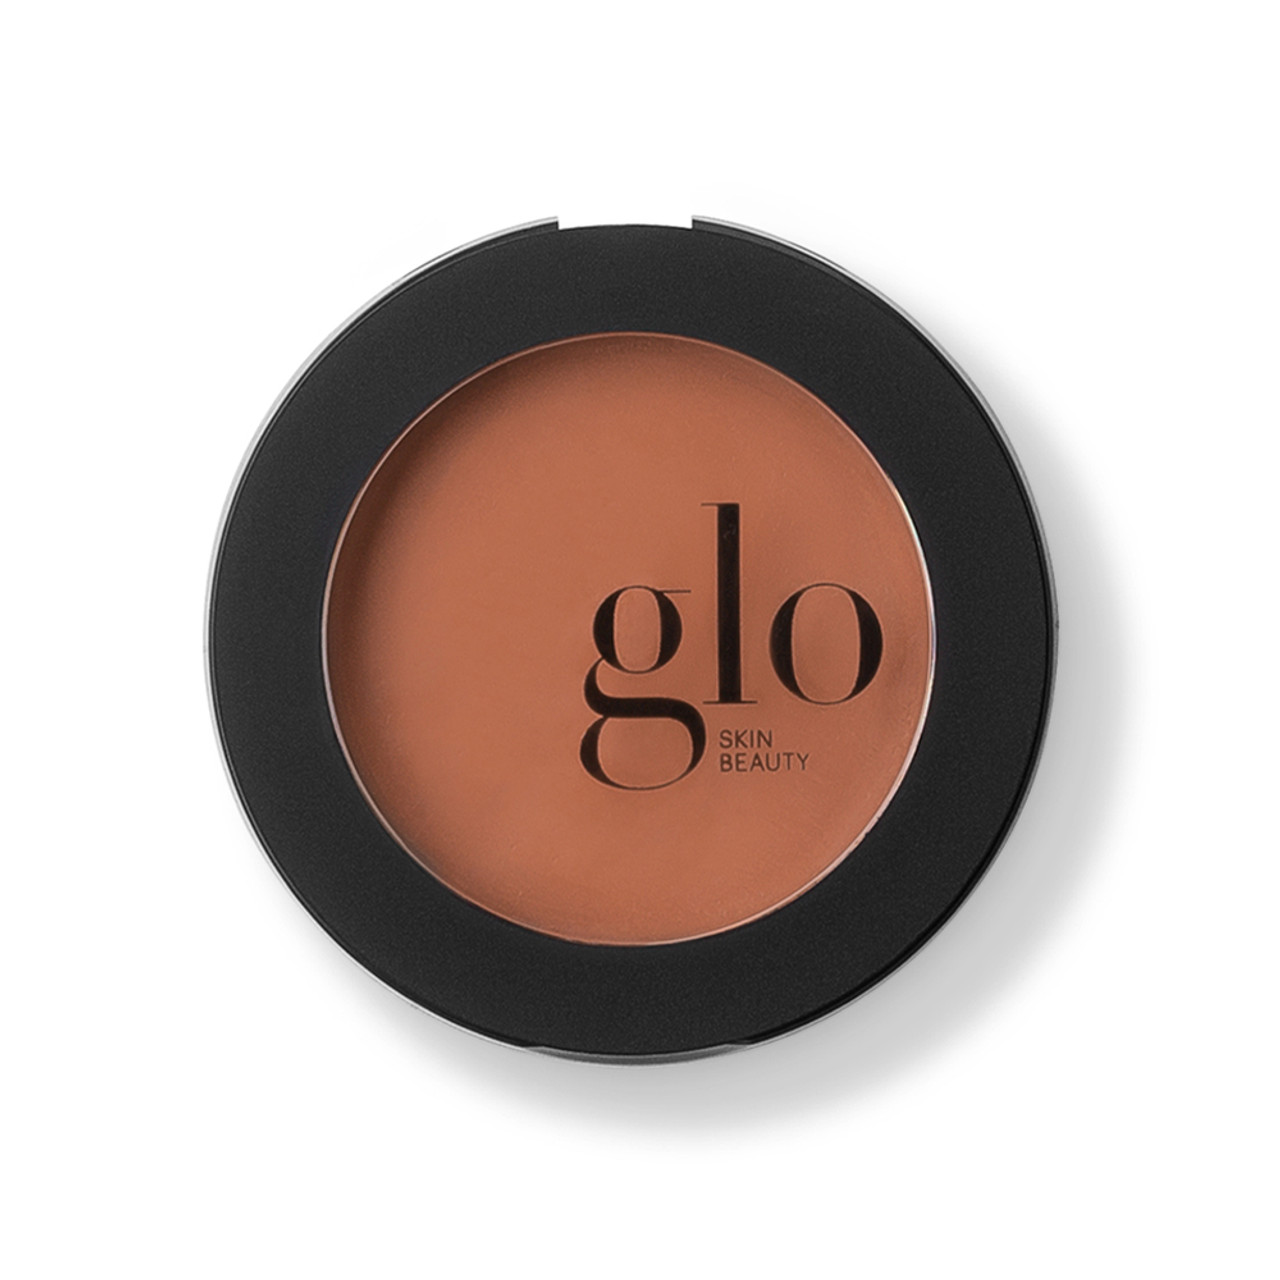 glo Skin Beauty Cream Blush - Warmth